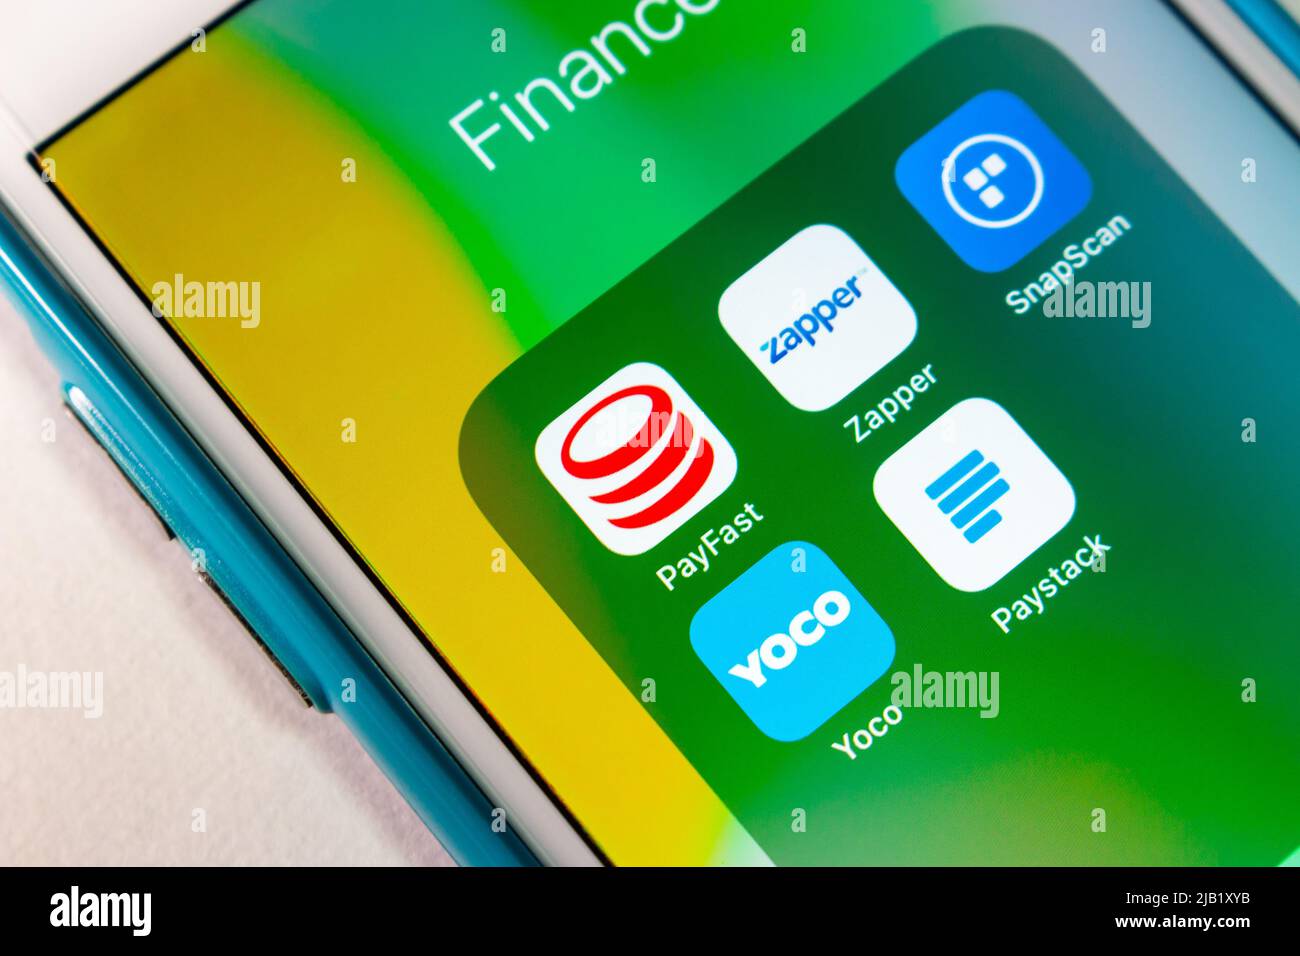 Payfast, plate-forme de paiement en Afrique du Sud et autres services de transfert d'argent/paiement mobile africains (application Zapper, SnapScan, YOCO et Paystack) sur iPhone Banque D'Images